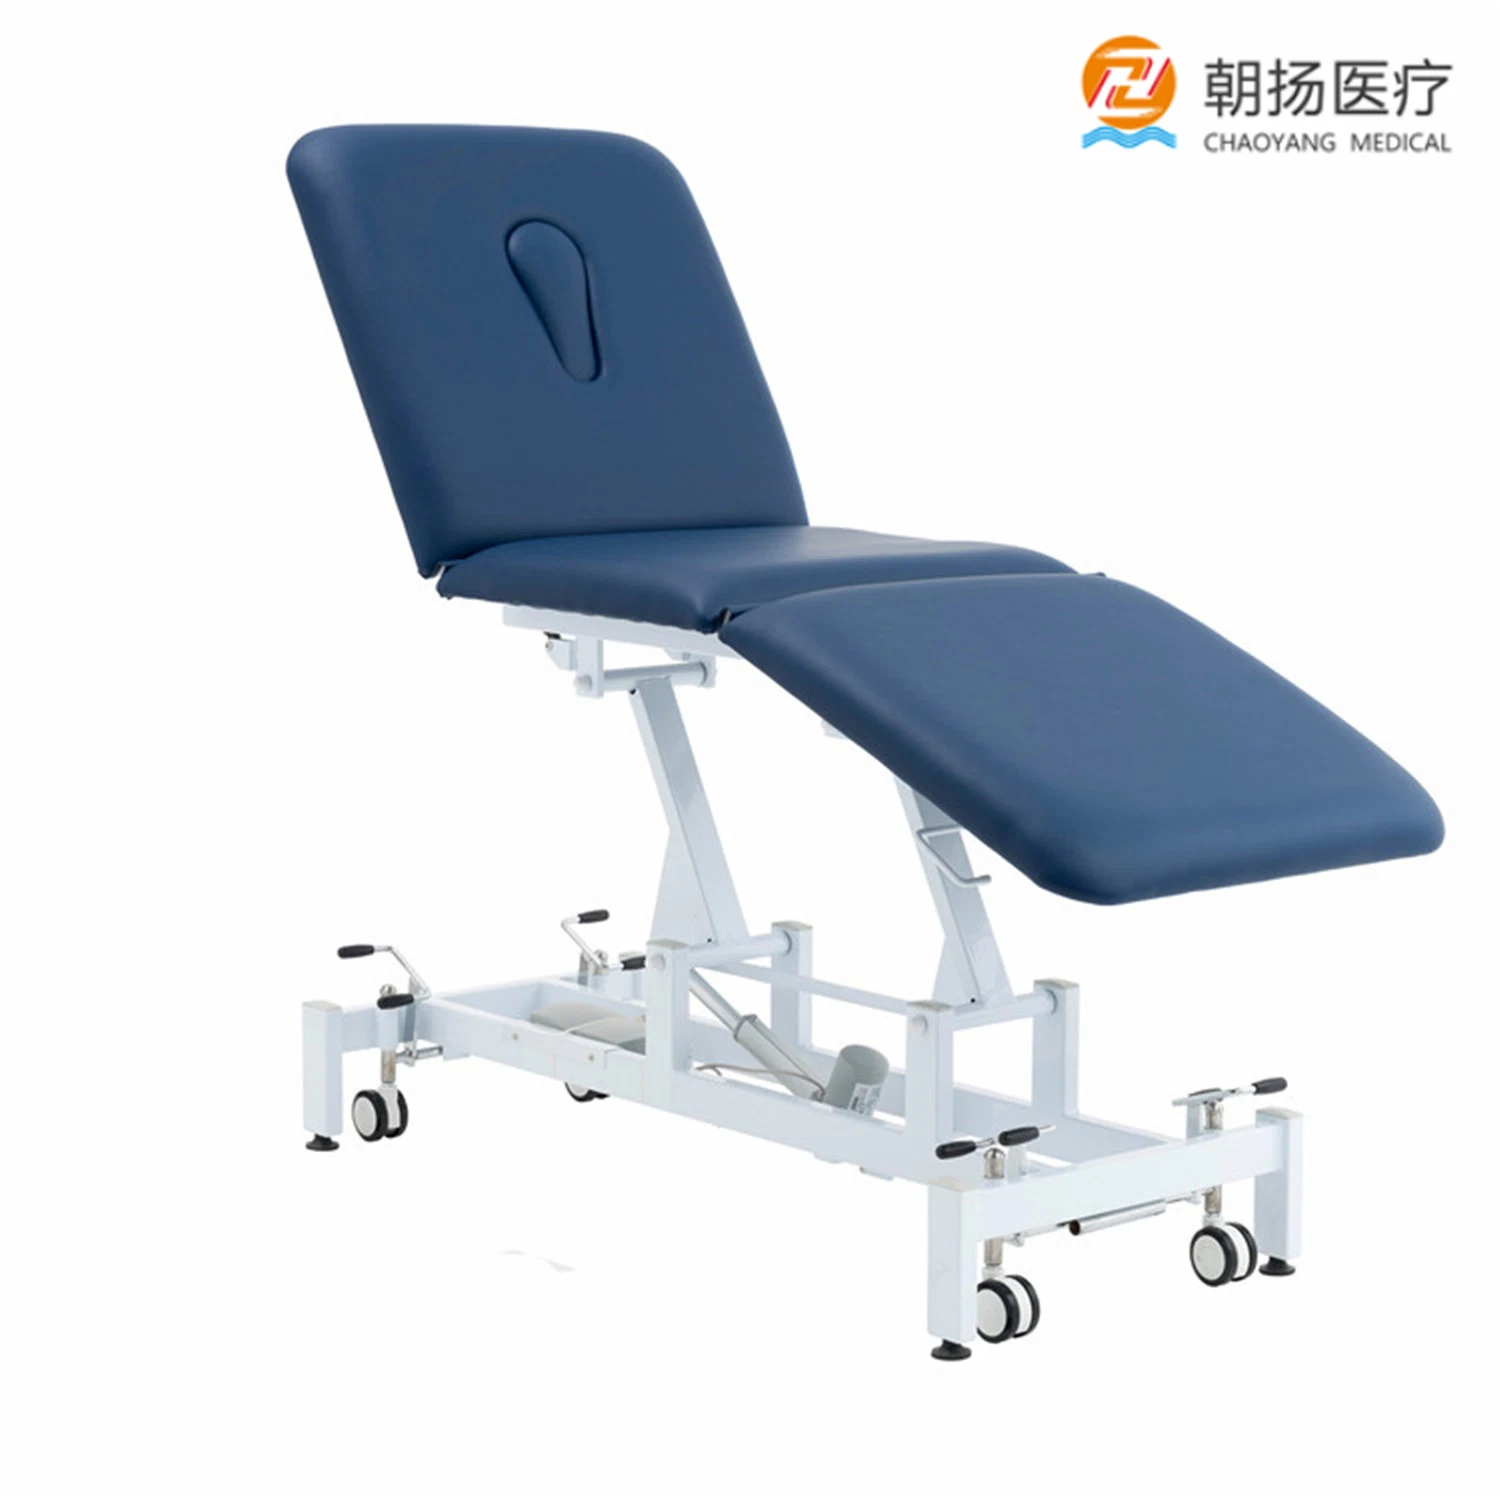 Cy-C108 Hot Sale lit d'hôpital médical PT Formation socle/Table de traitement de la table en table de traitement physique de thérapie physique